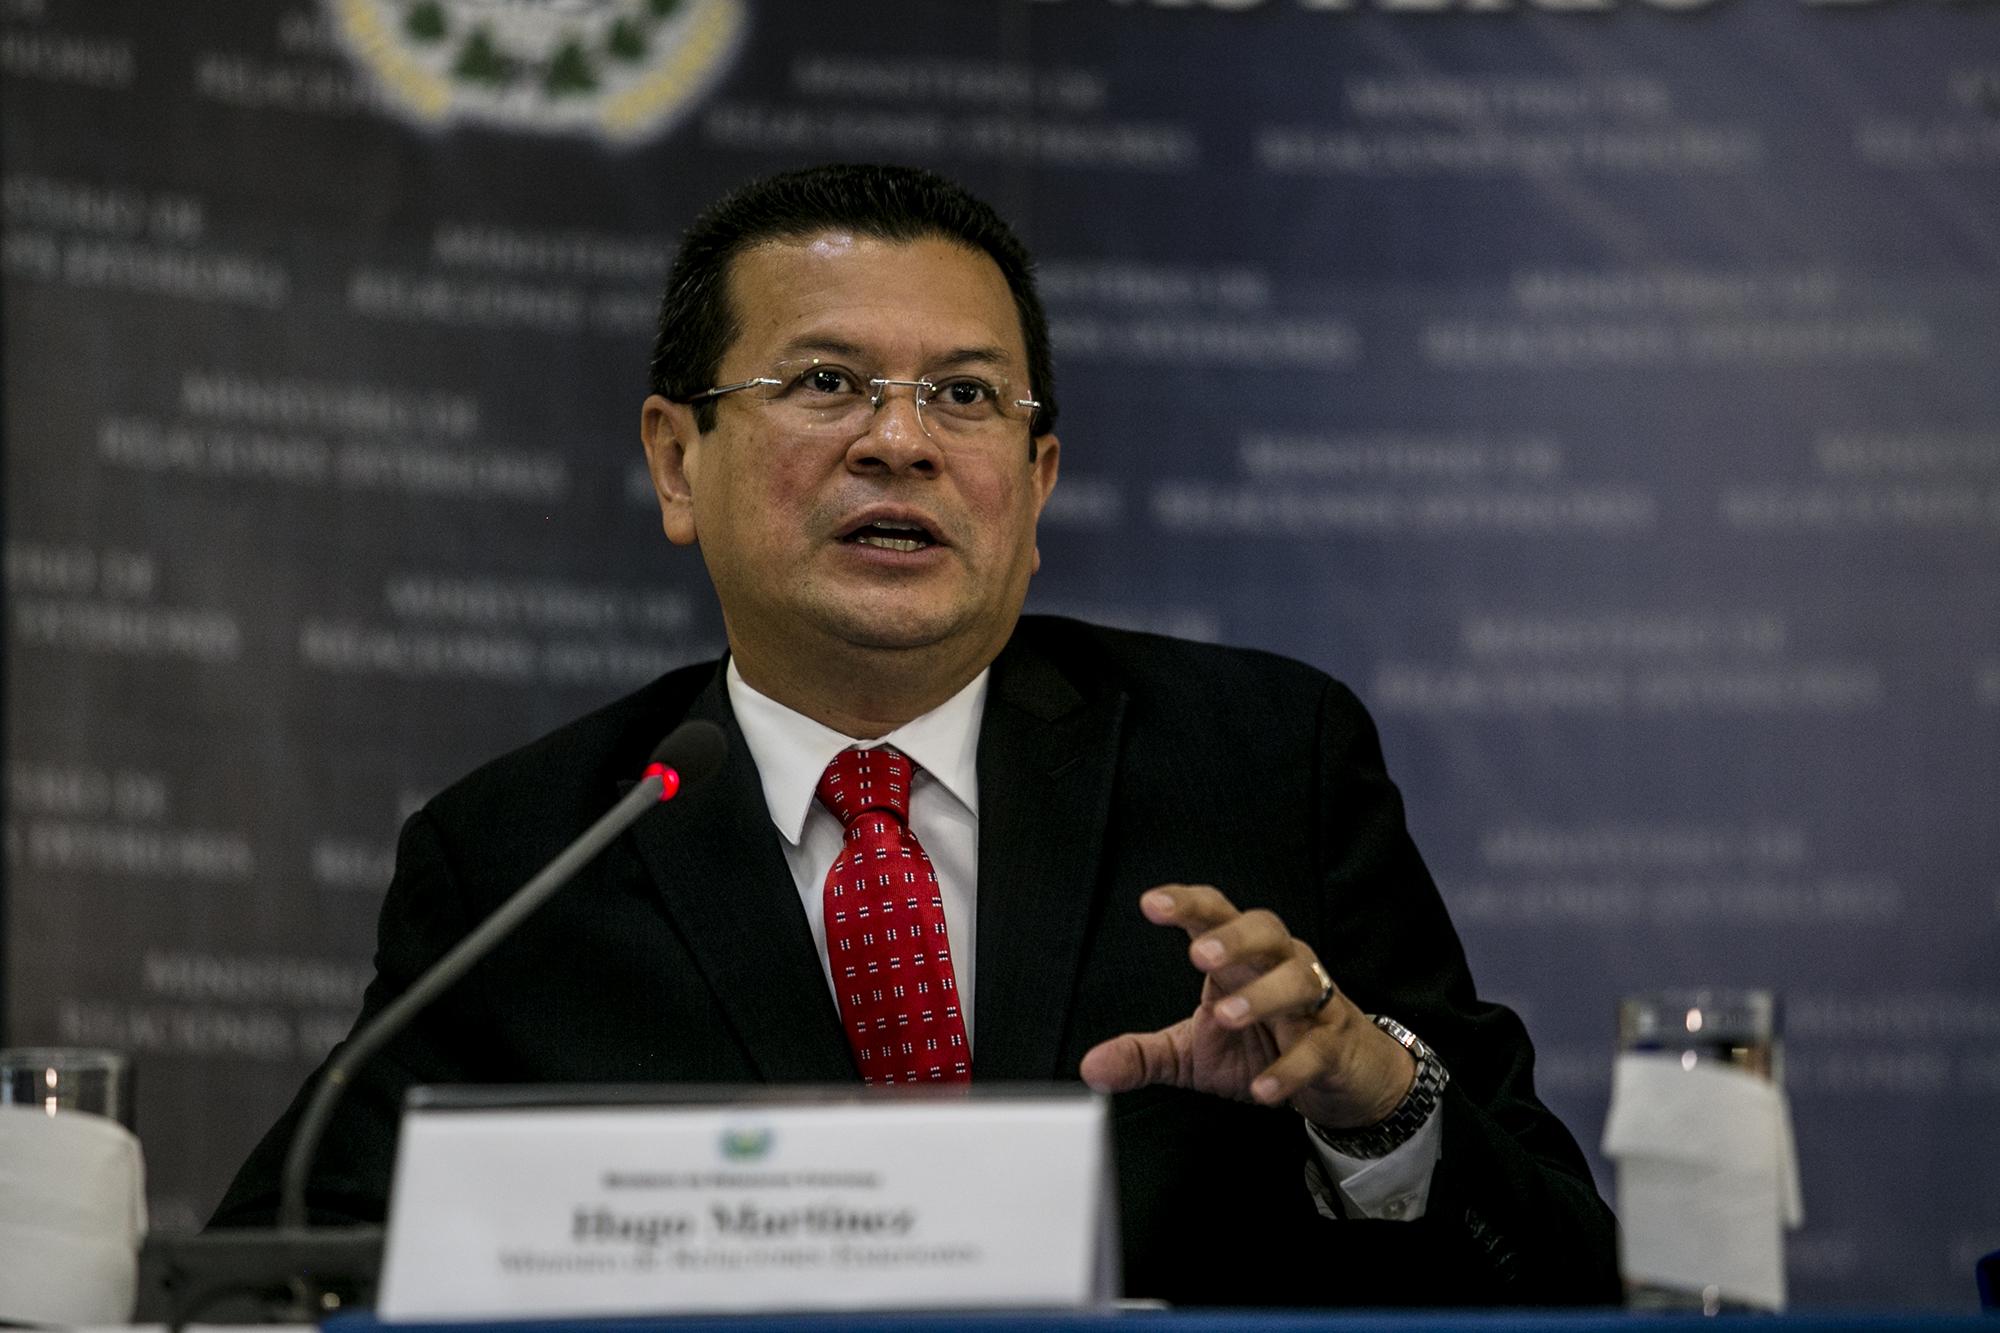 El canciller Hugo Martínez durante la conferencia sobre la decisión de Estados Unidos de cancelar el TPS, el 8 de enero de 2017. Foto de El Faro, por: Fred Ramos